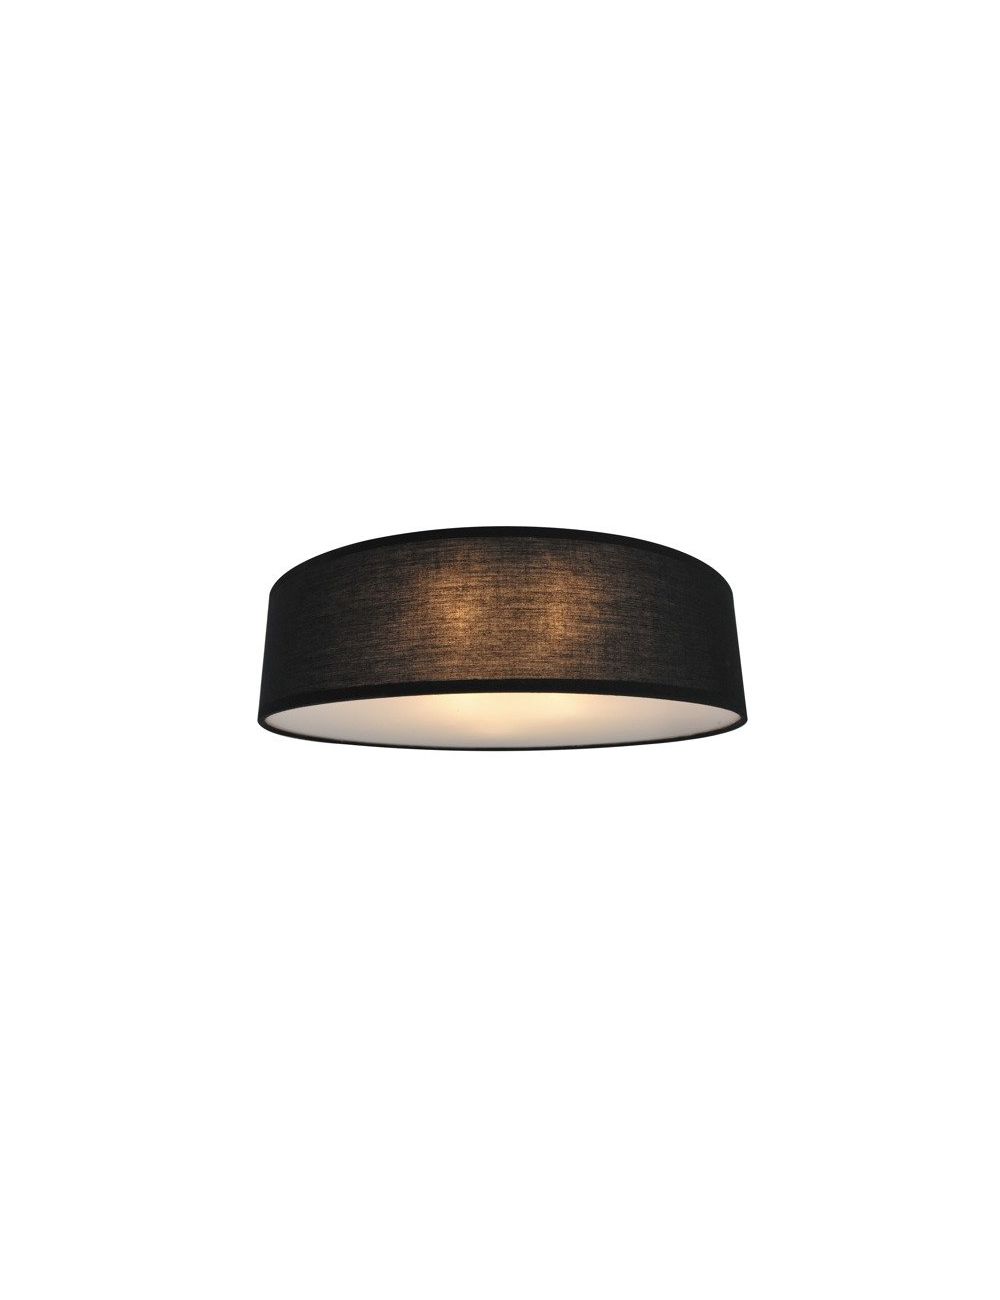 Lampa sufitowa plafon okrągły abażurowy czarny Clara 40 Zuma Line CL12029-D40-BK